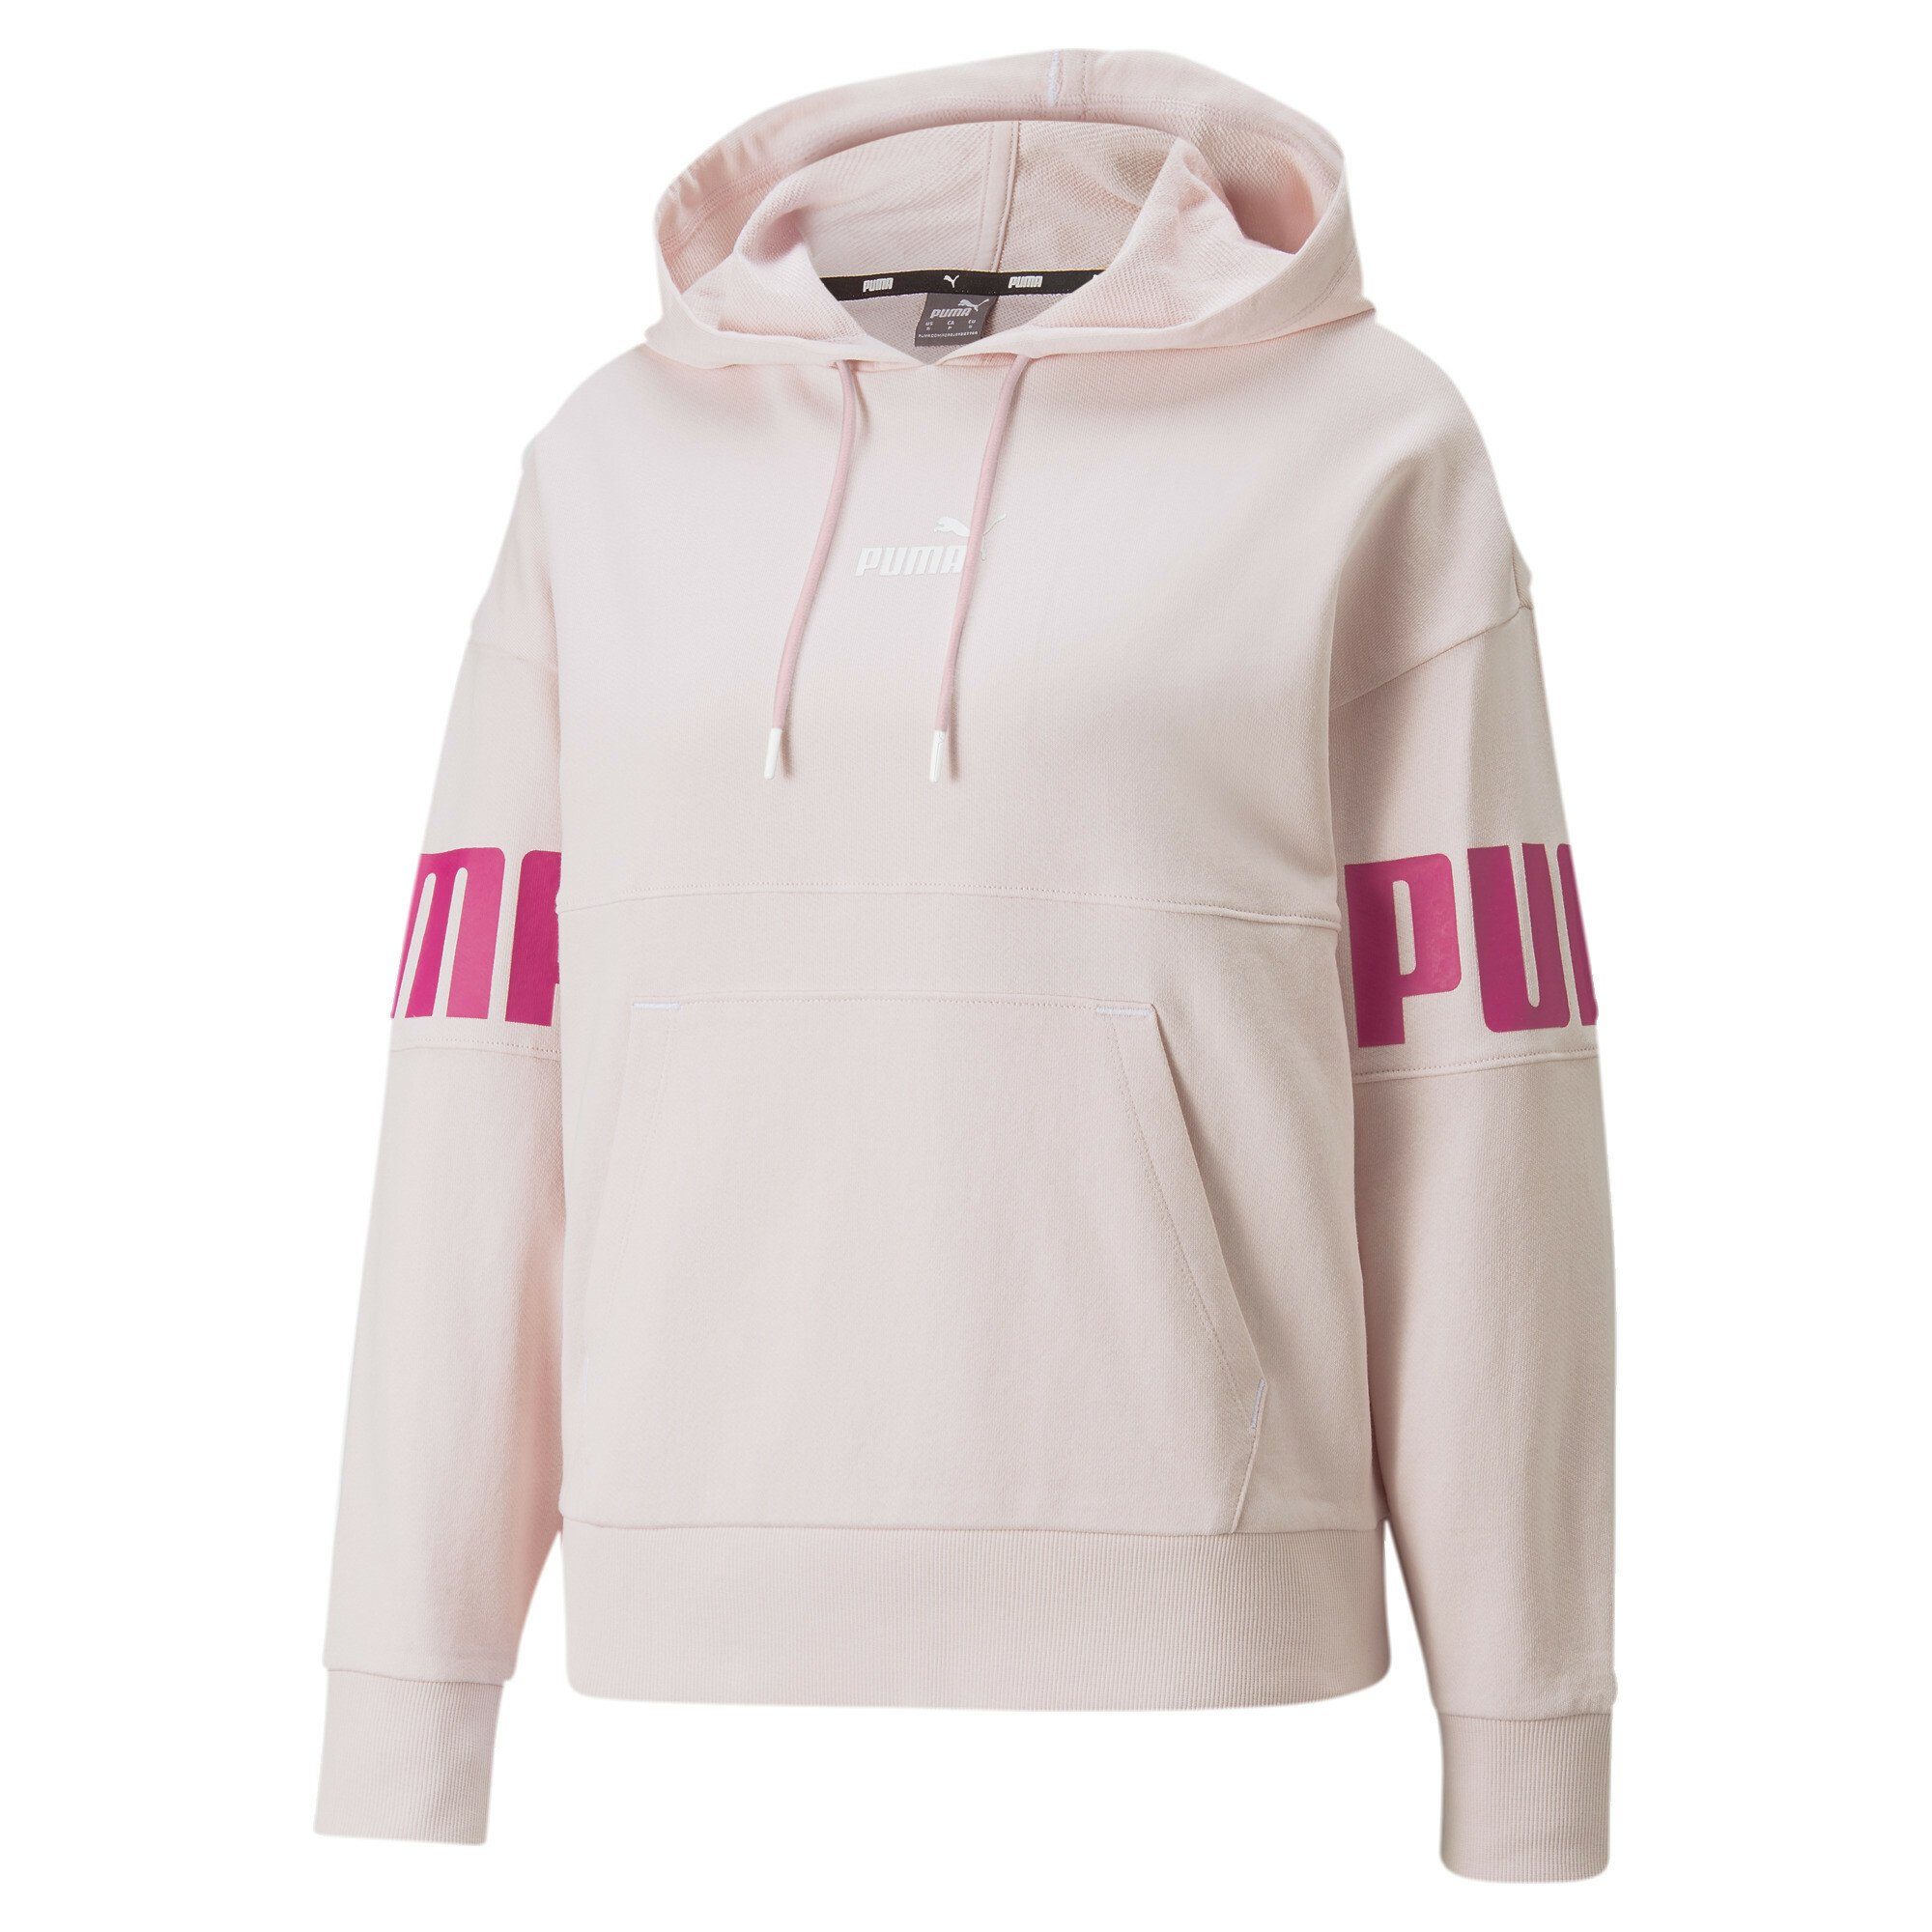 PUMA Sweater Power Damen Hoodie, Kängurutasche online kaufen | OTTO